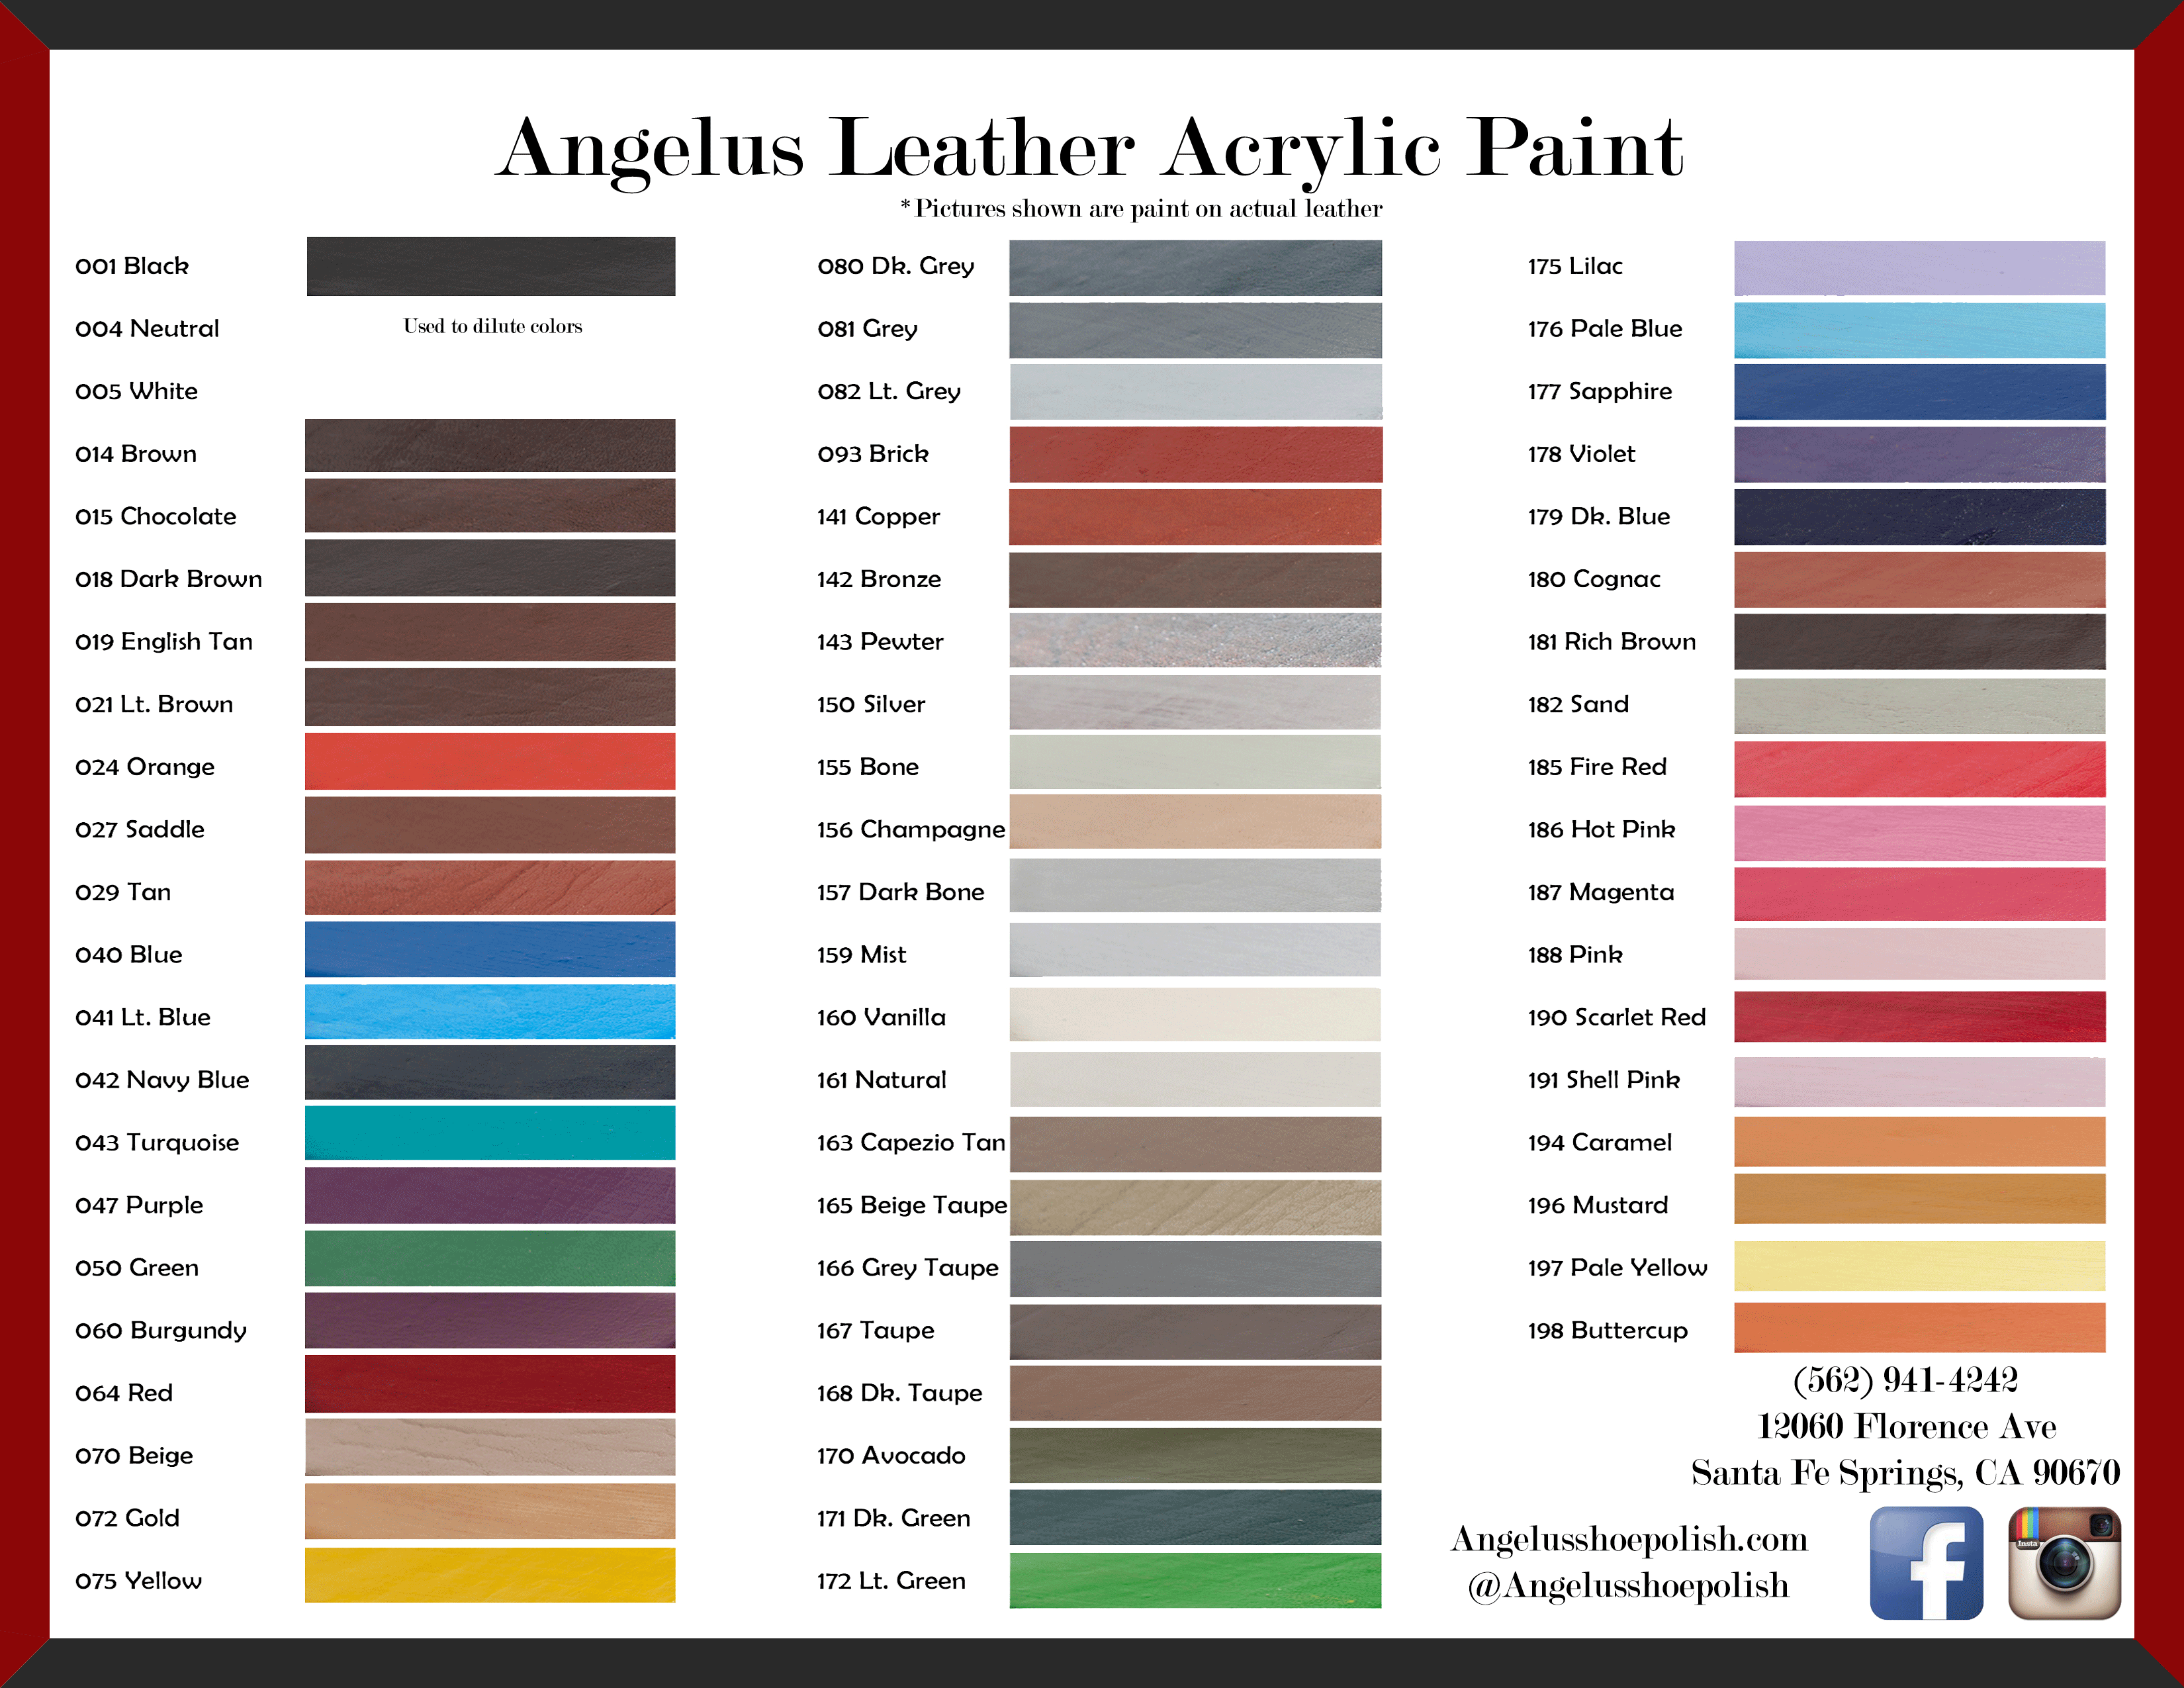 Angelus Acrylic Leather Paint - 4 oz. Blue